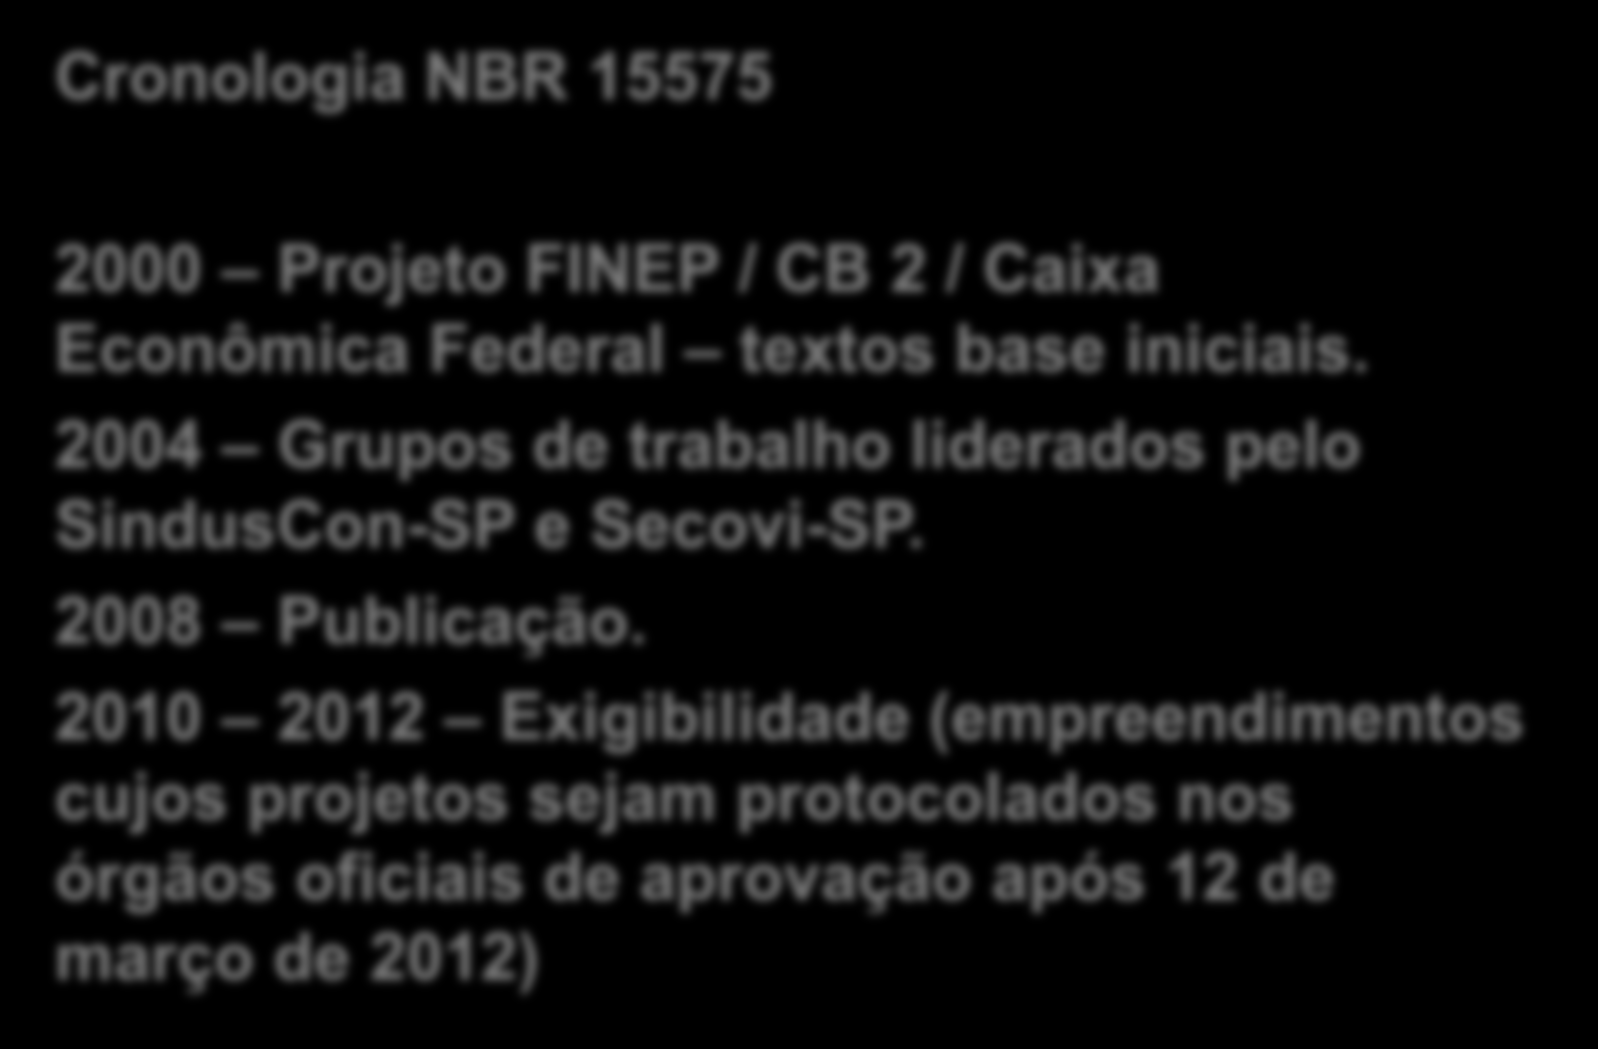 Cronologia NBR 15575 2000 Projeto FINEP / CB 2 / Caixa Econômica Federal textos base iniciais.